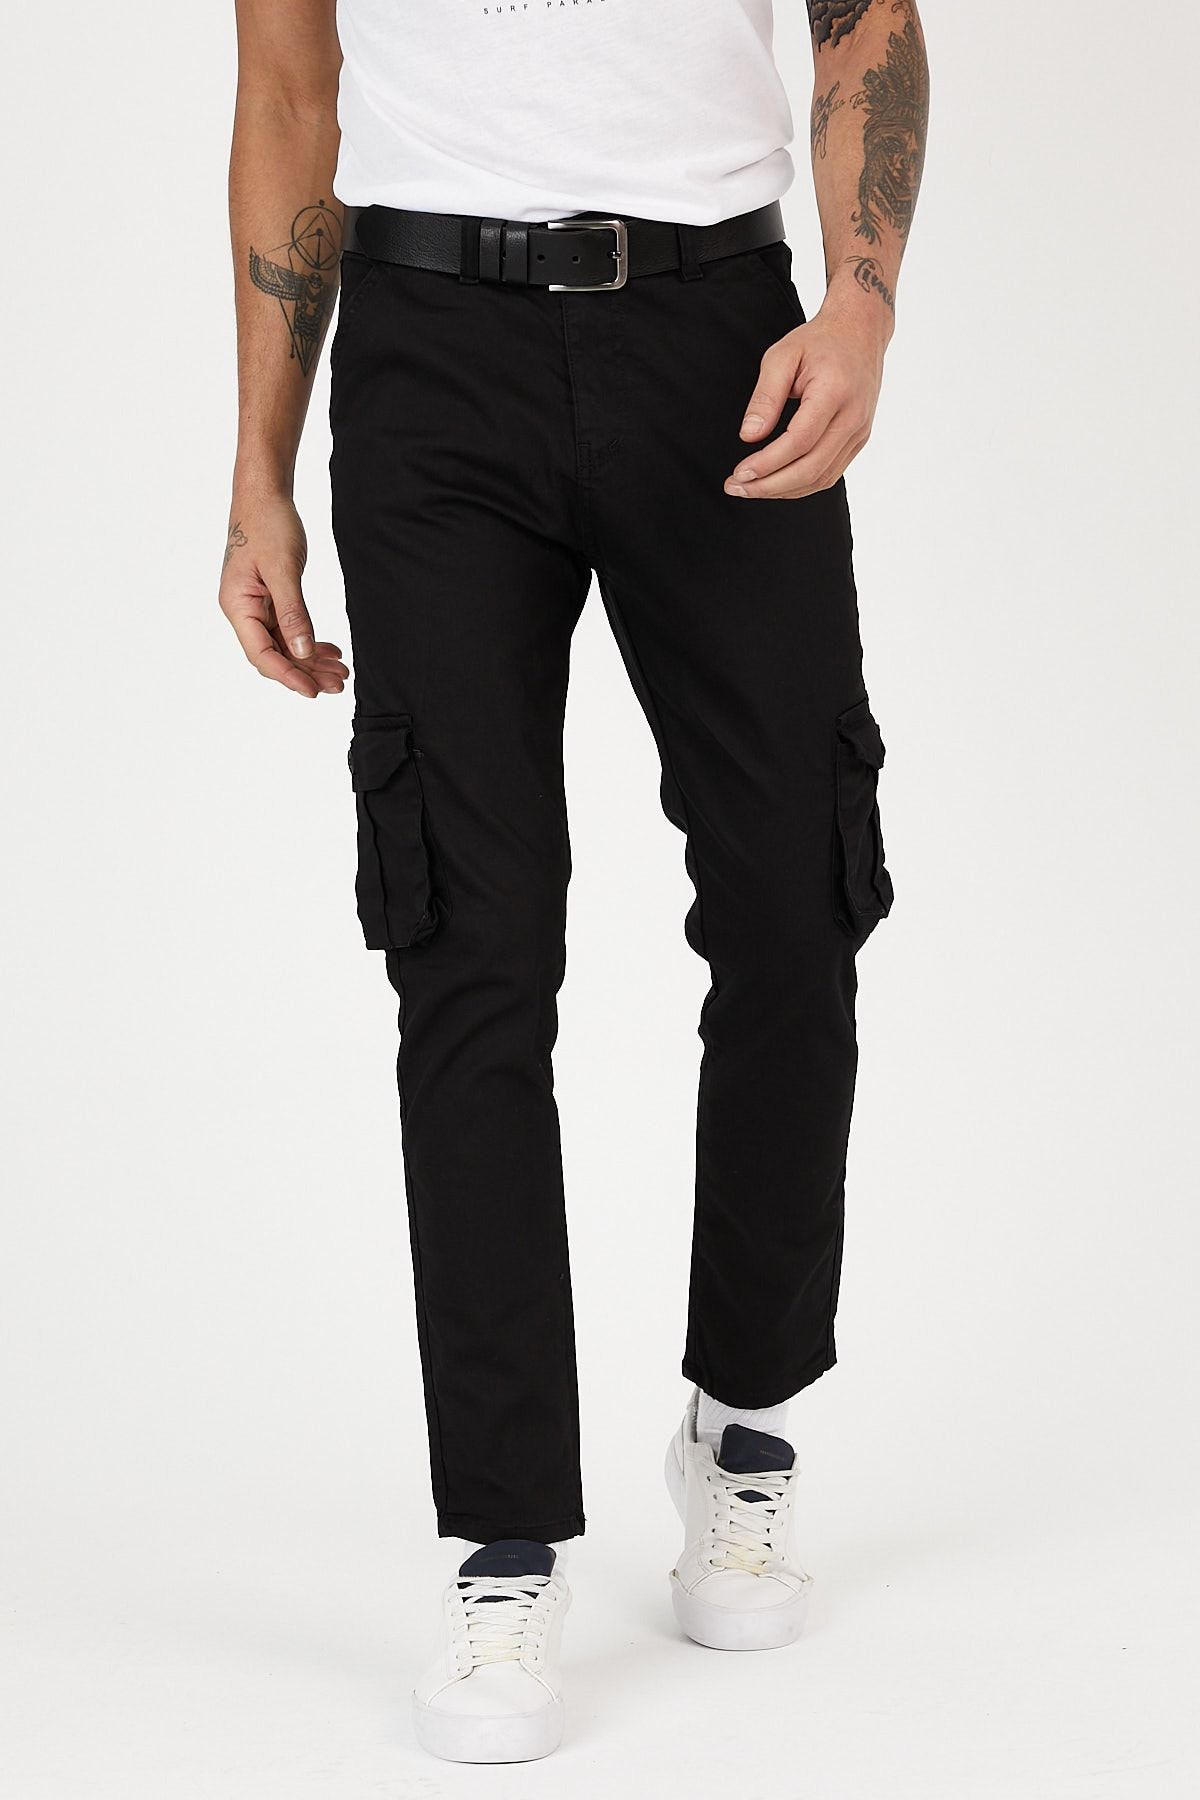 Serseri Jeans Siyah Renk Körüklü Paçası Lastiksiz Kargo Pantolon